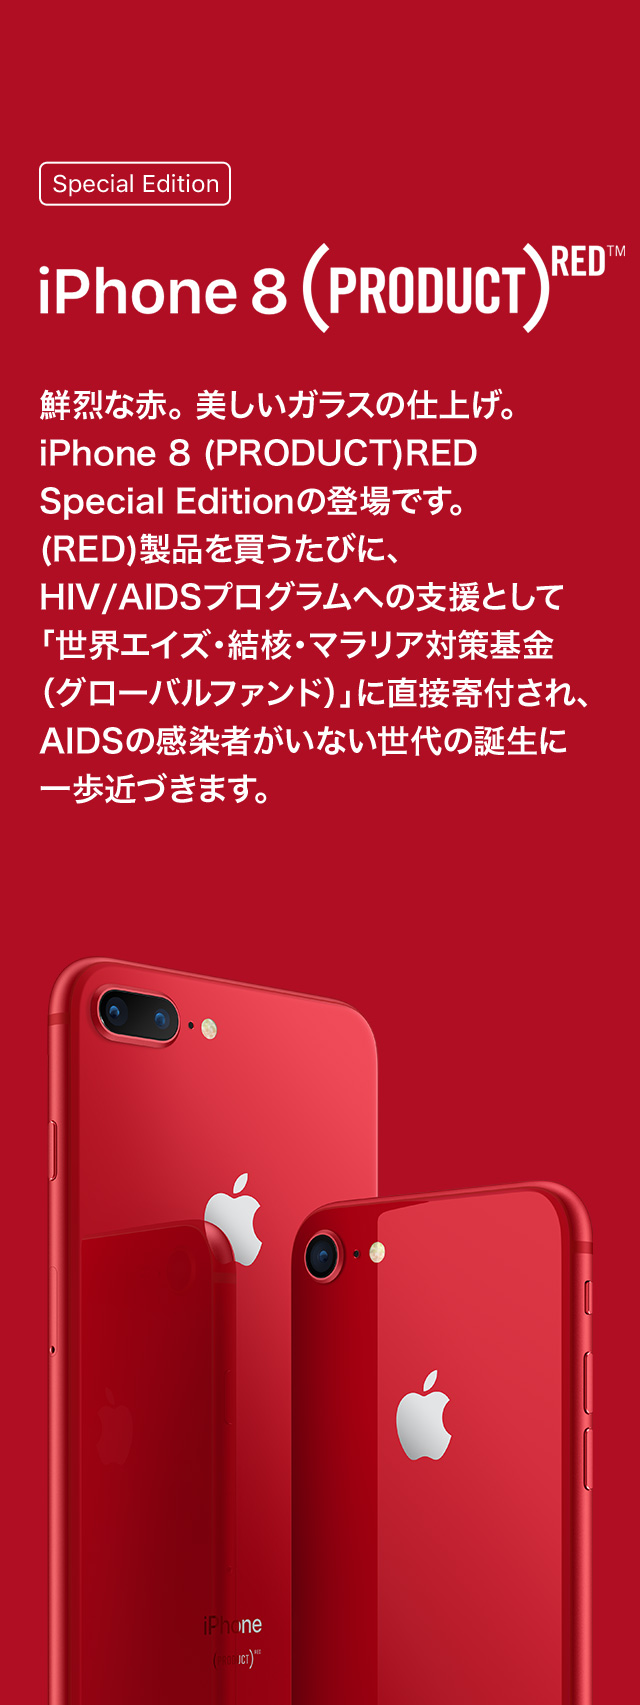 Special Edition iPhone 8 (PRODUCT)RED™ 鮮烈な赤。美しいガラスの仕上げ。iPhone 8 (PRODUCT)RED Special Editionの登場です。(RED)製品を買うたびに、HIV/AIDSプログラムへの支援として「世界エイズ・結核・マラリア対策基金（グローバルファンド）」に直接寄付され、AIDSの感染者がいない世代の誕生に一歩近づきます。